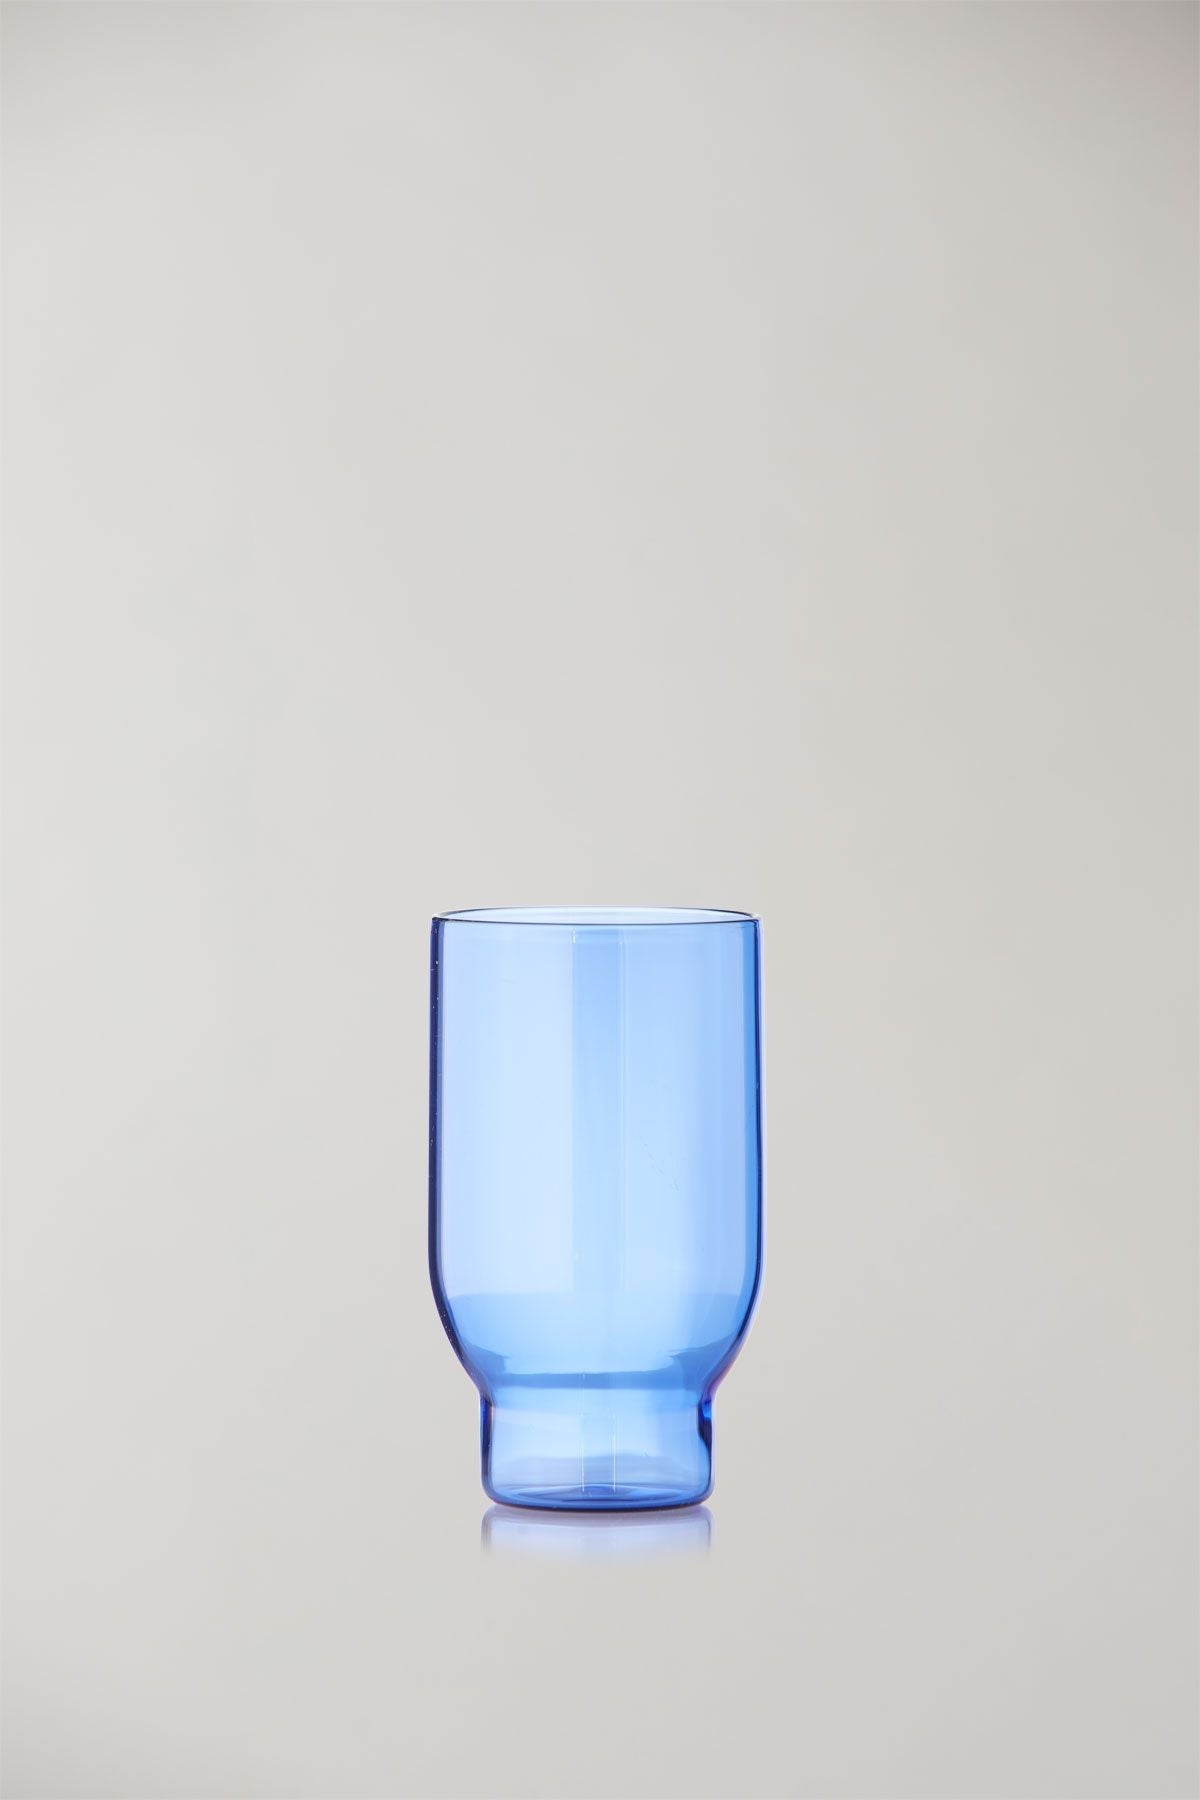 Studio sur l'ensemble de verrerie de 2 verres à eau, bleu